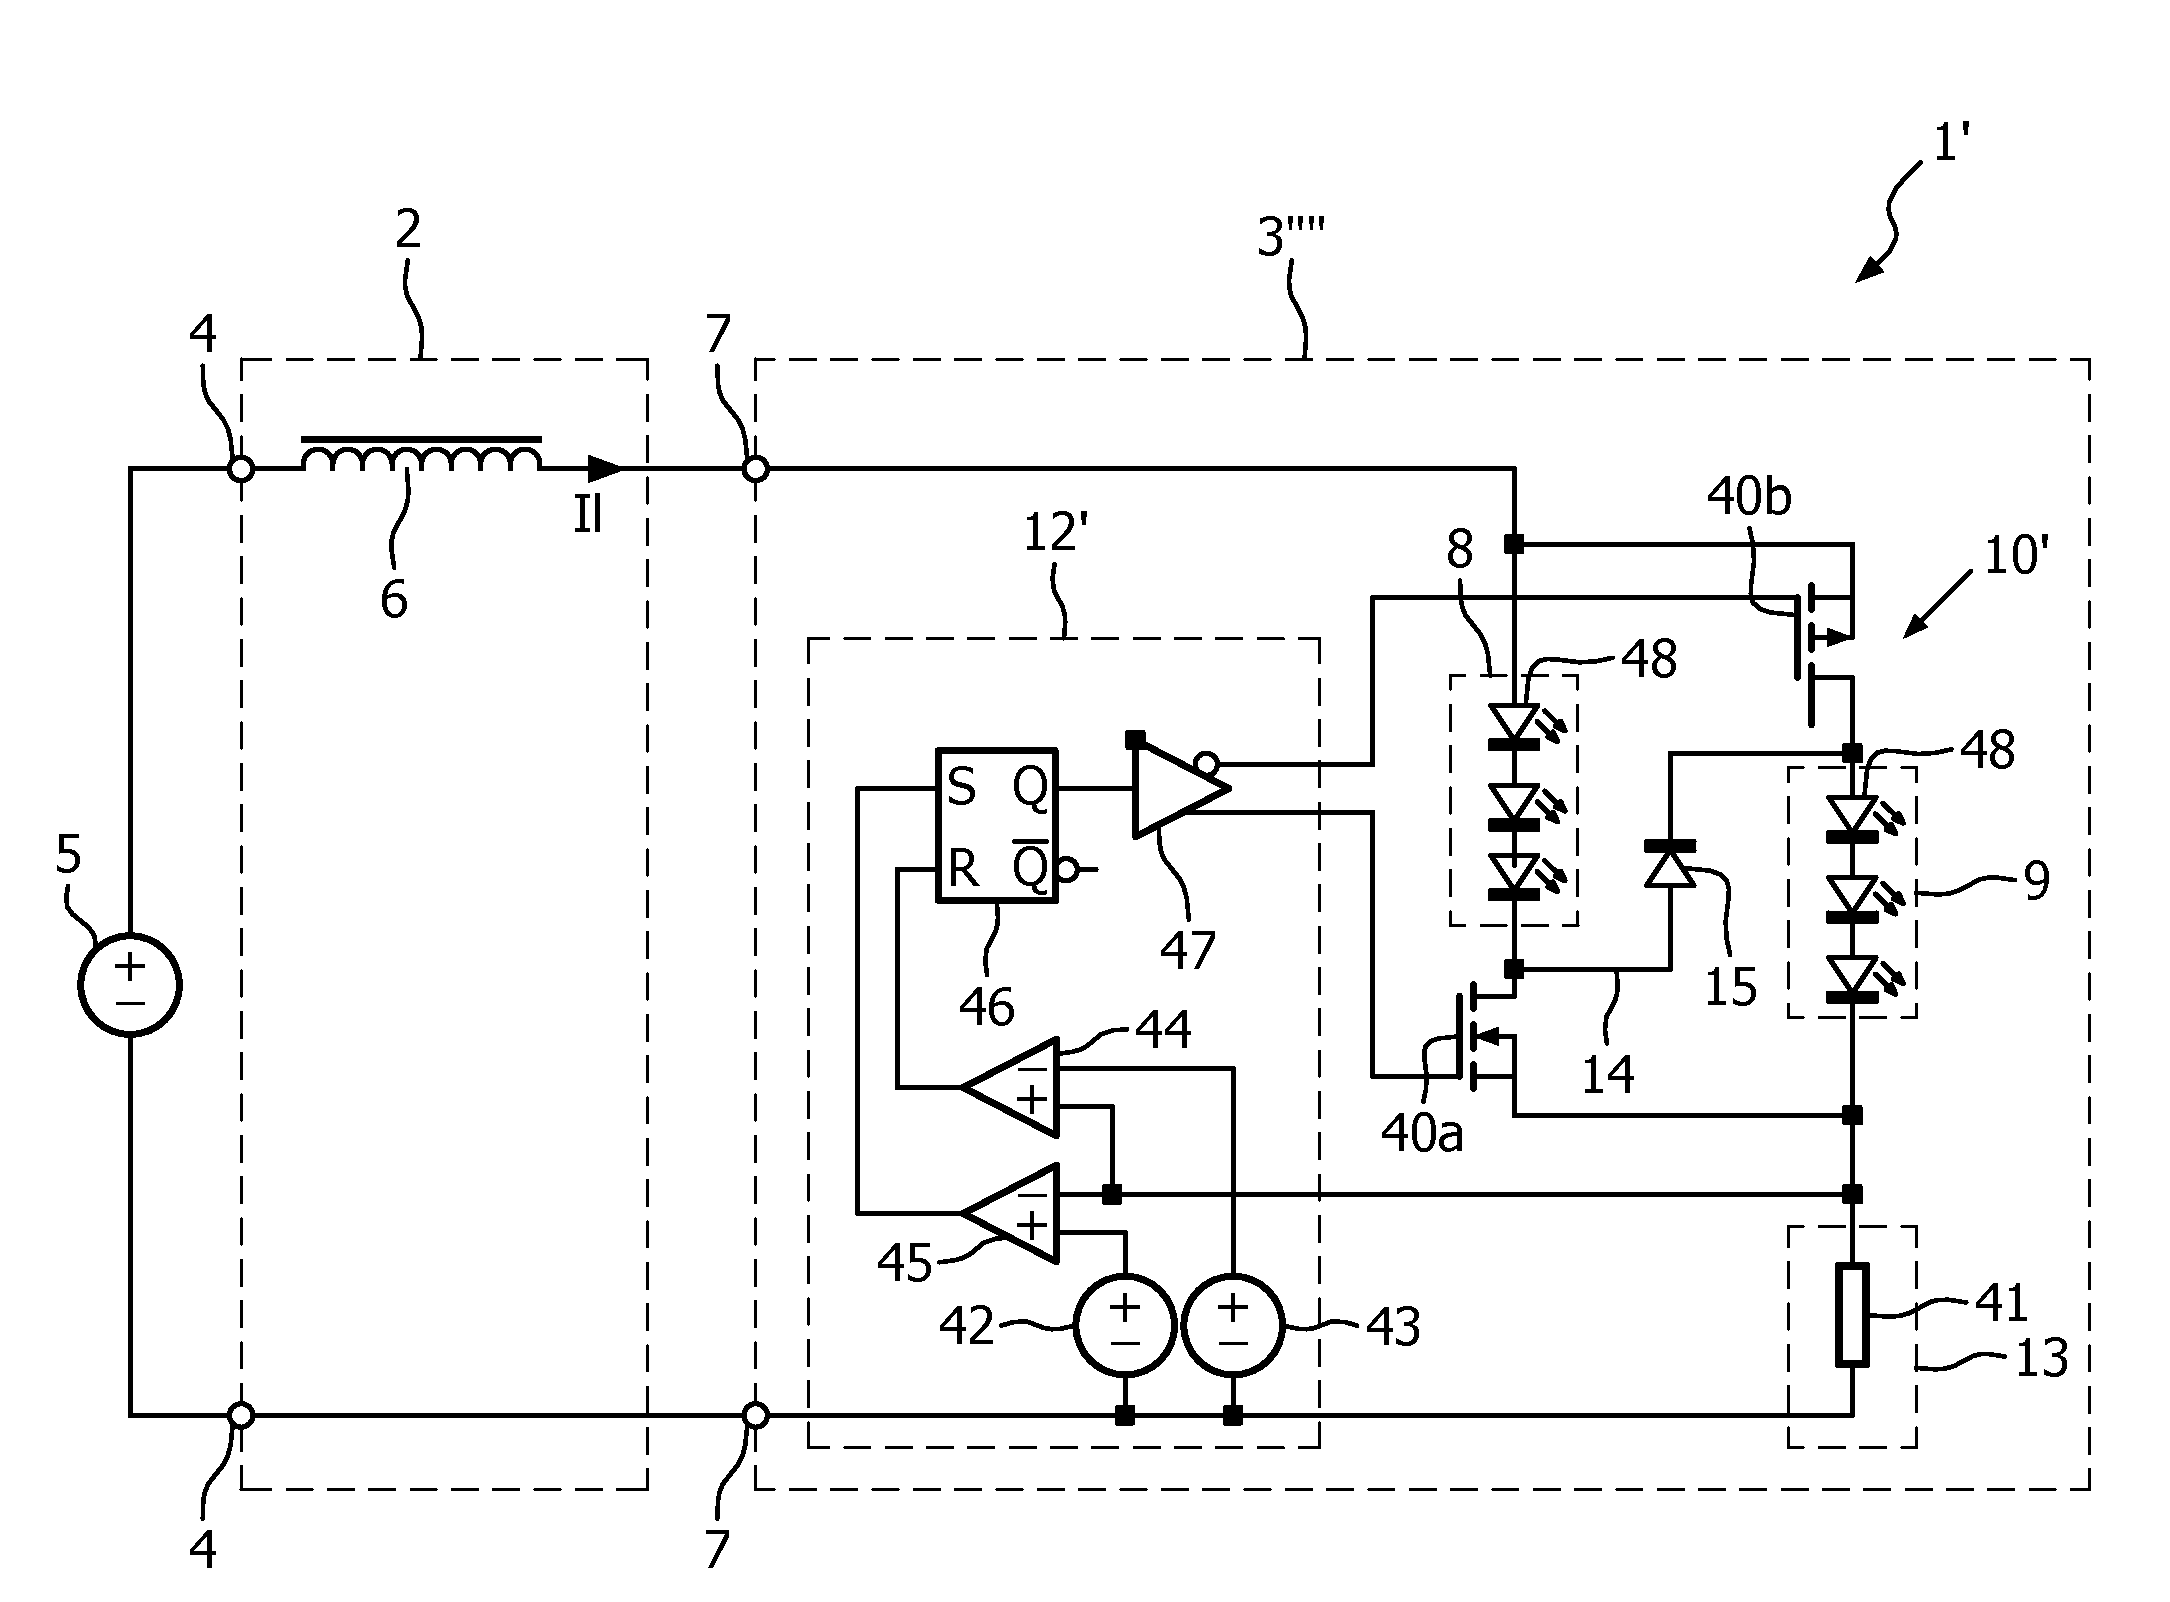 LED circuit arrangement